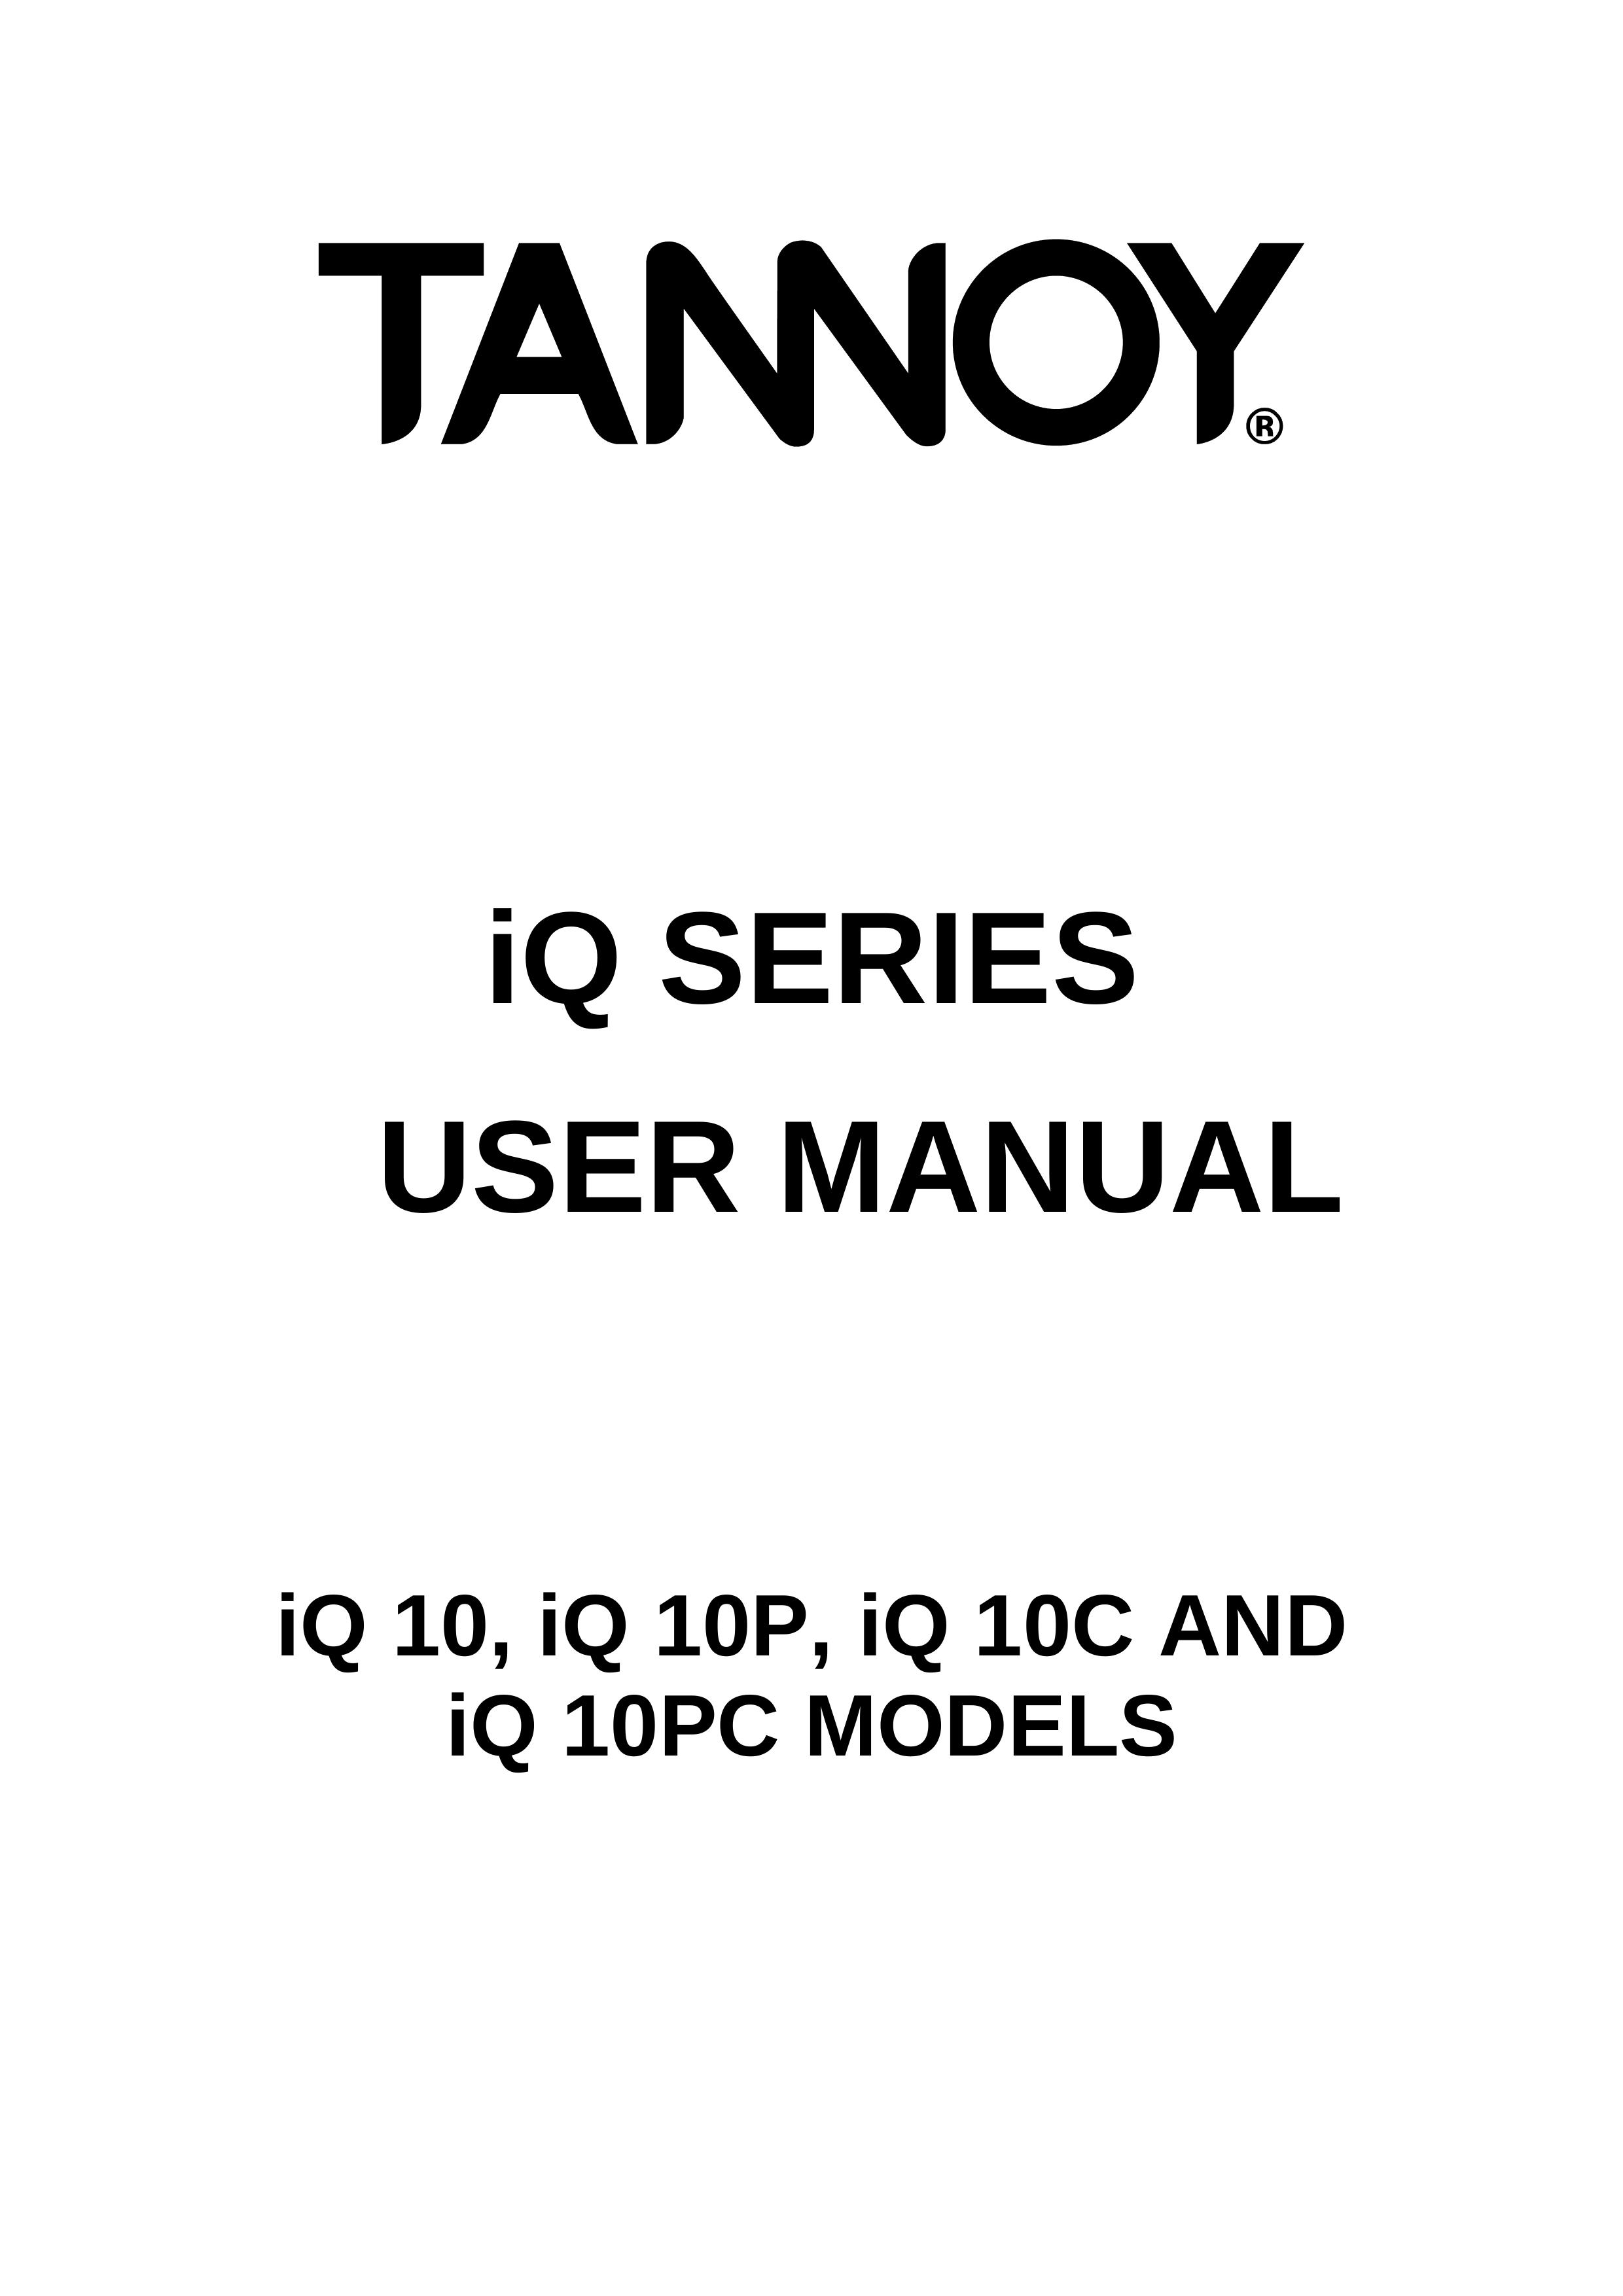 3Com iQ 10PC Refrigerator User Manual